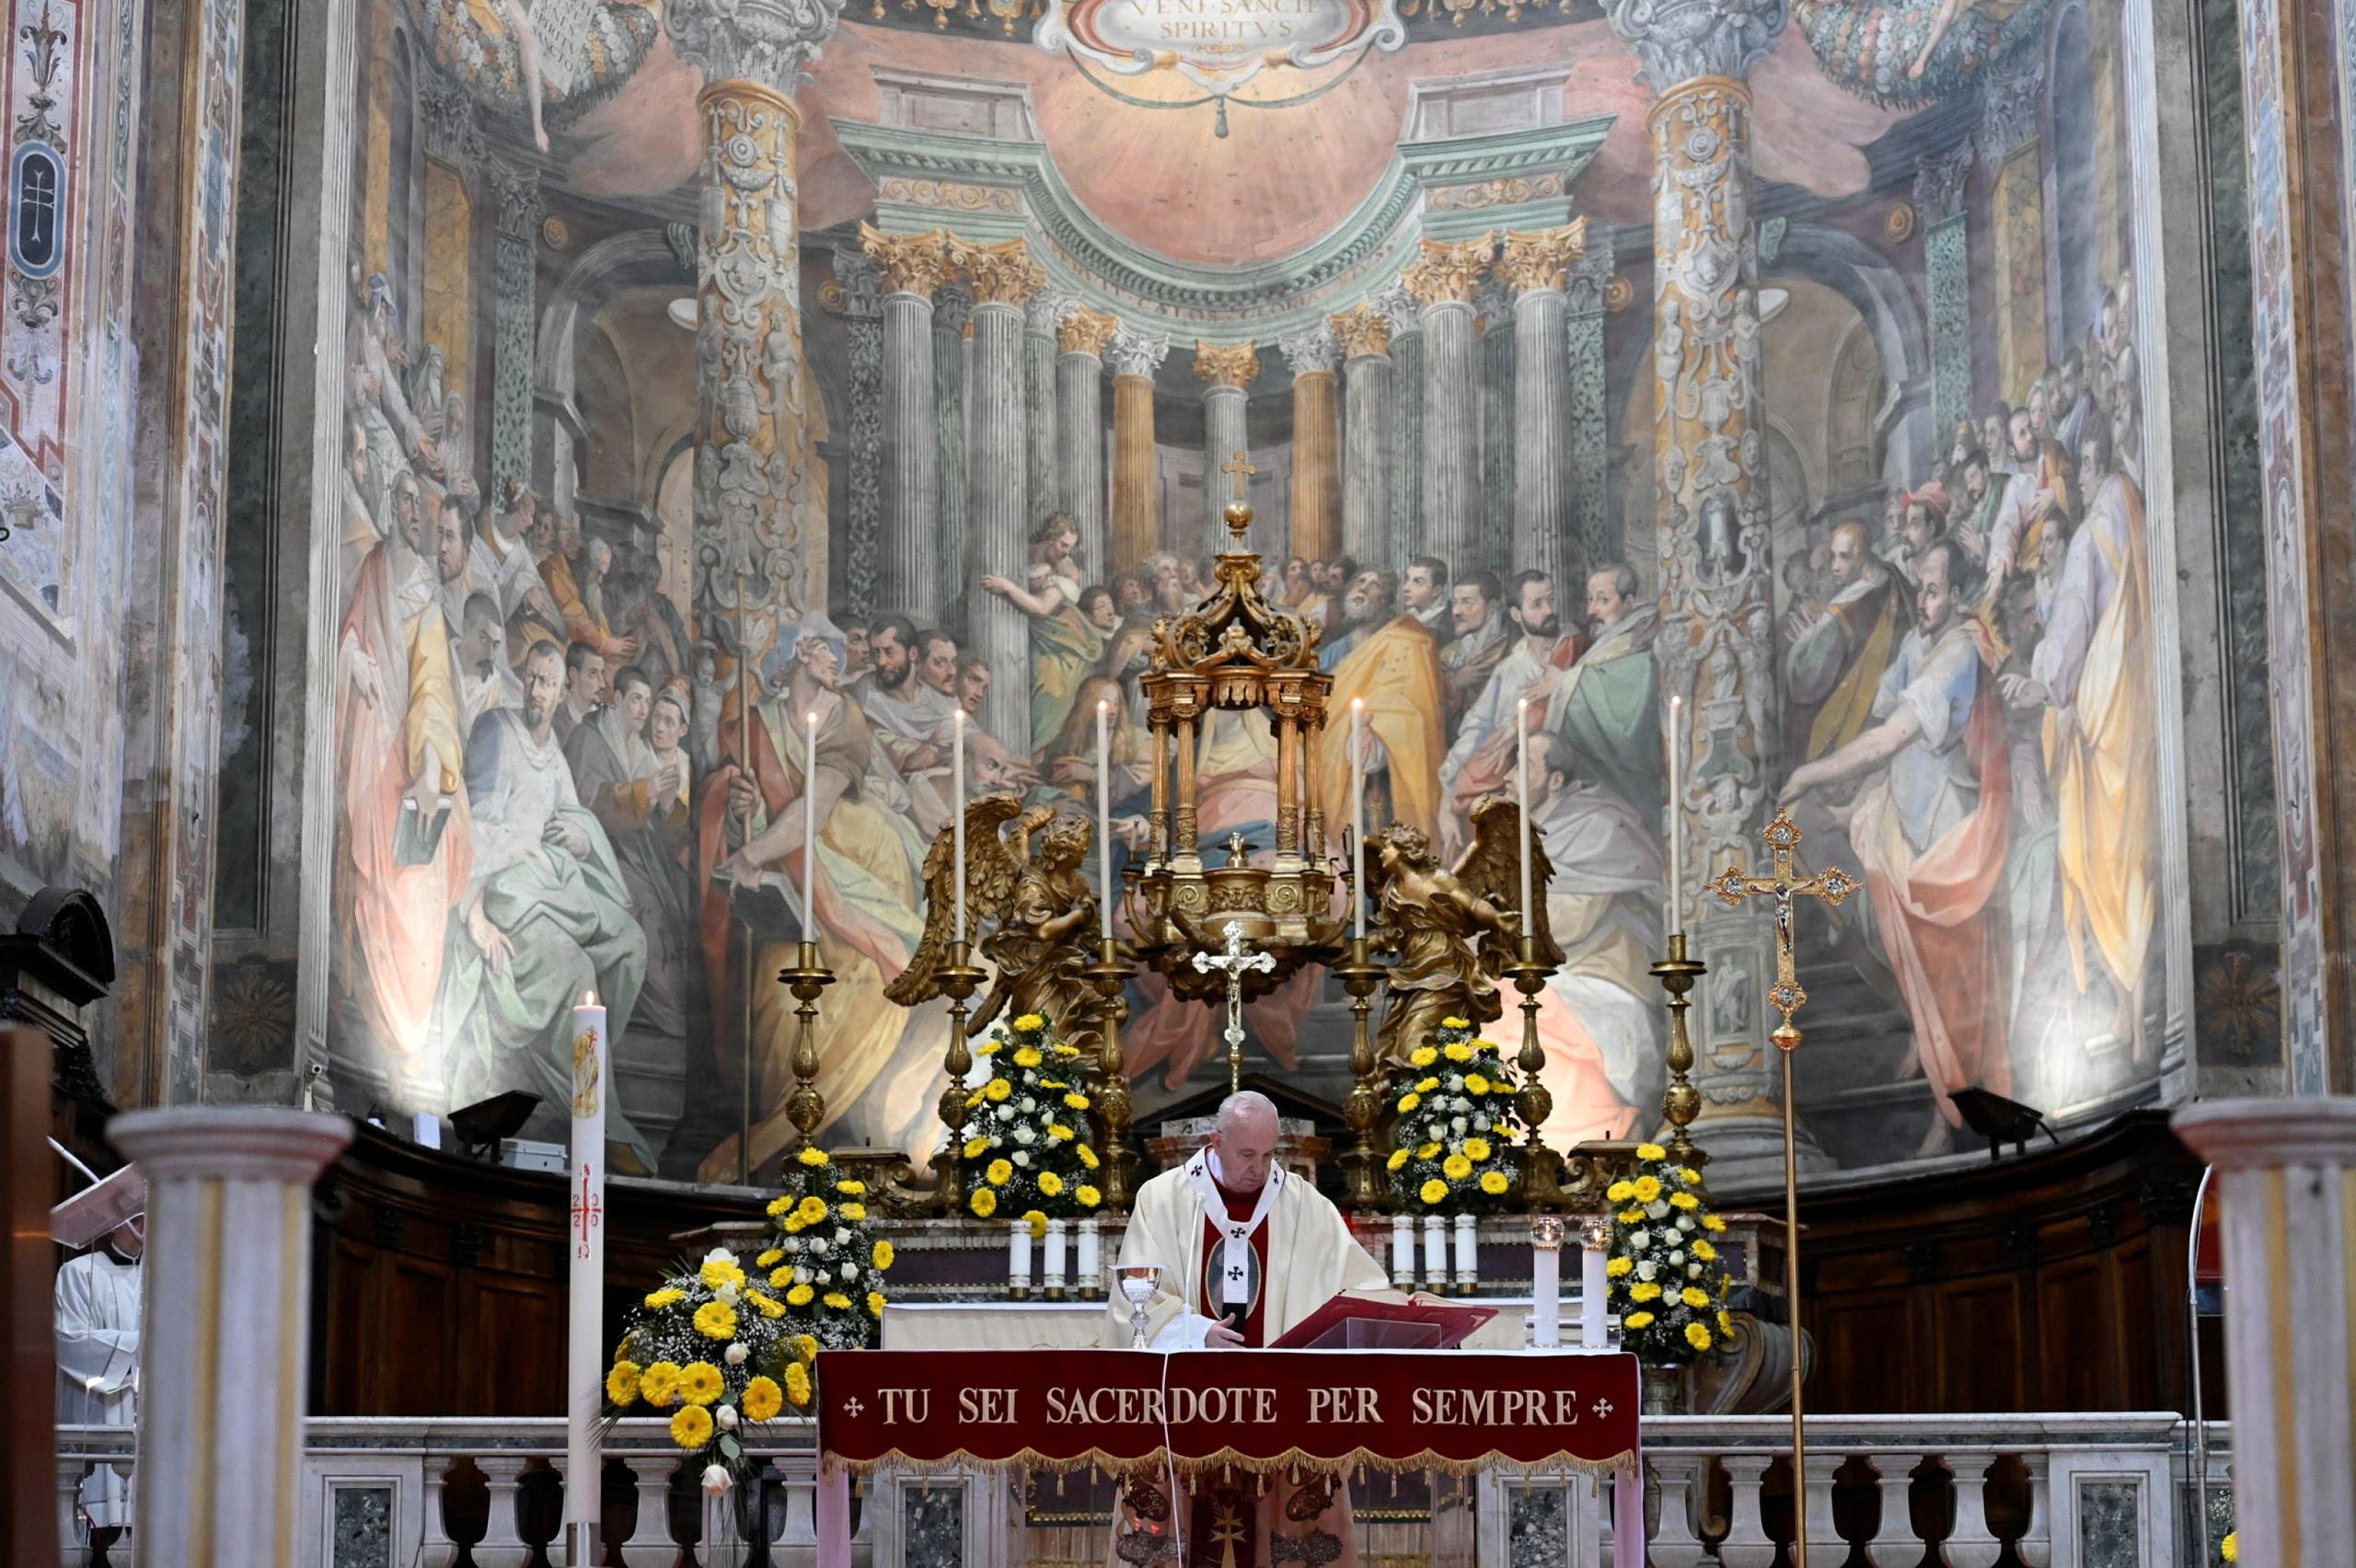 El Vaticano decretó su propia cuarentena, cerrando sus museos y ceremonias religiosas al público.